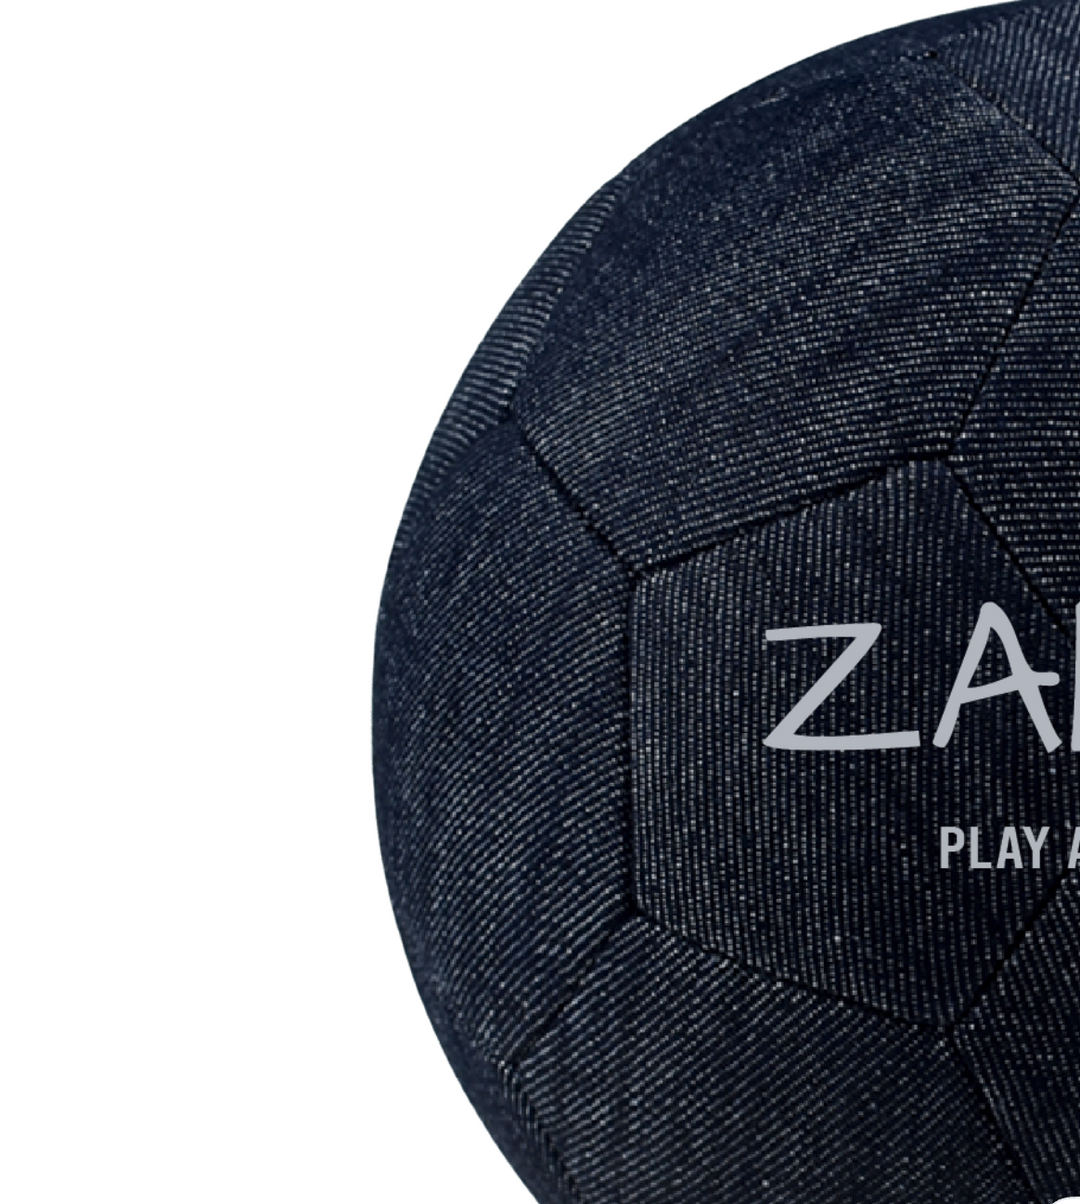 Denim Soccer Ball Zanya